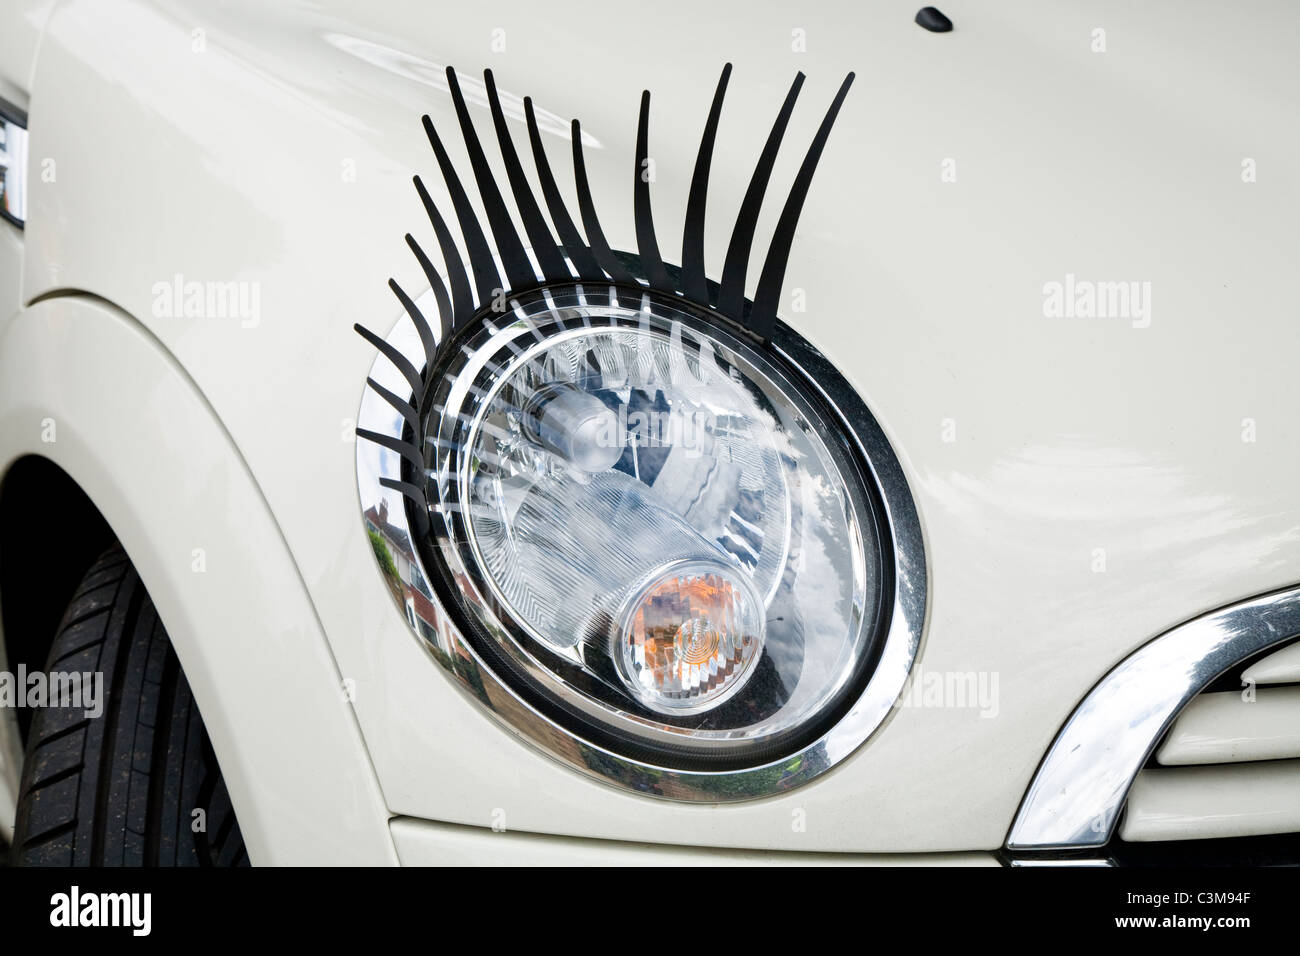 Autoscheinwerfer Augenbrauen Augenlider Abdeckung Wimpern Scheinwerfer  Lamp4031